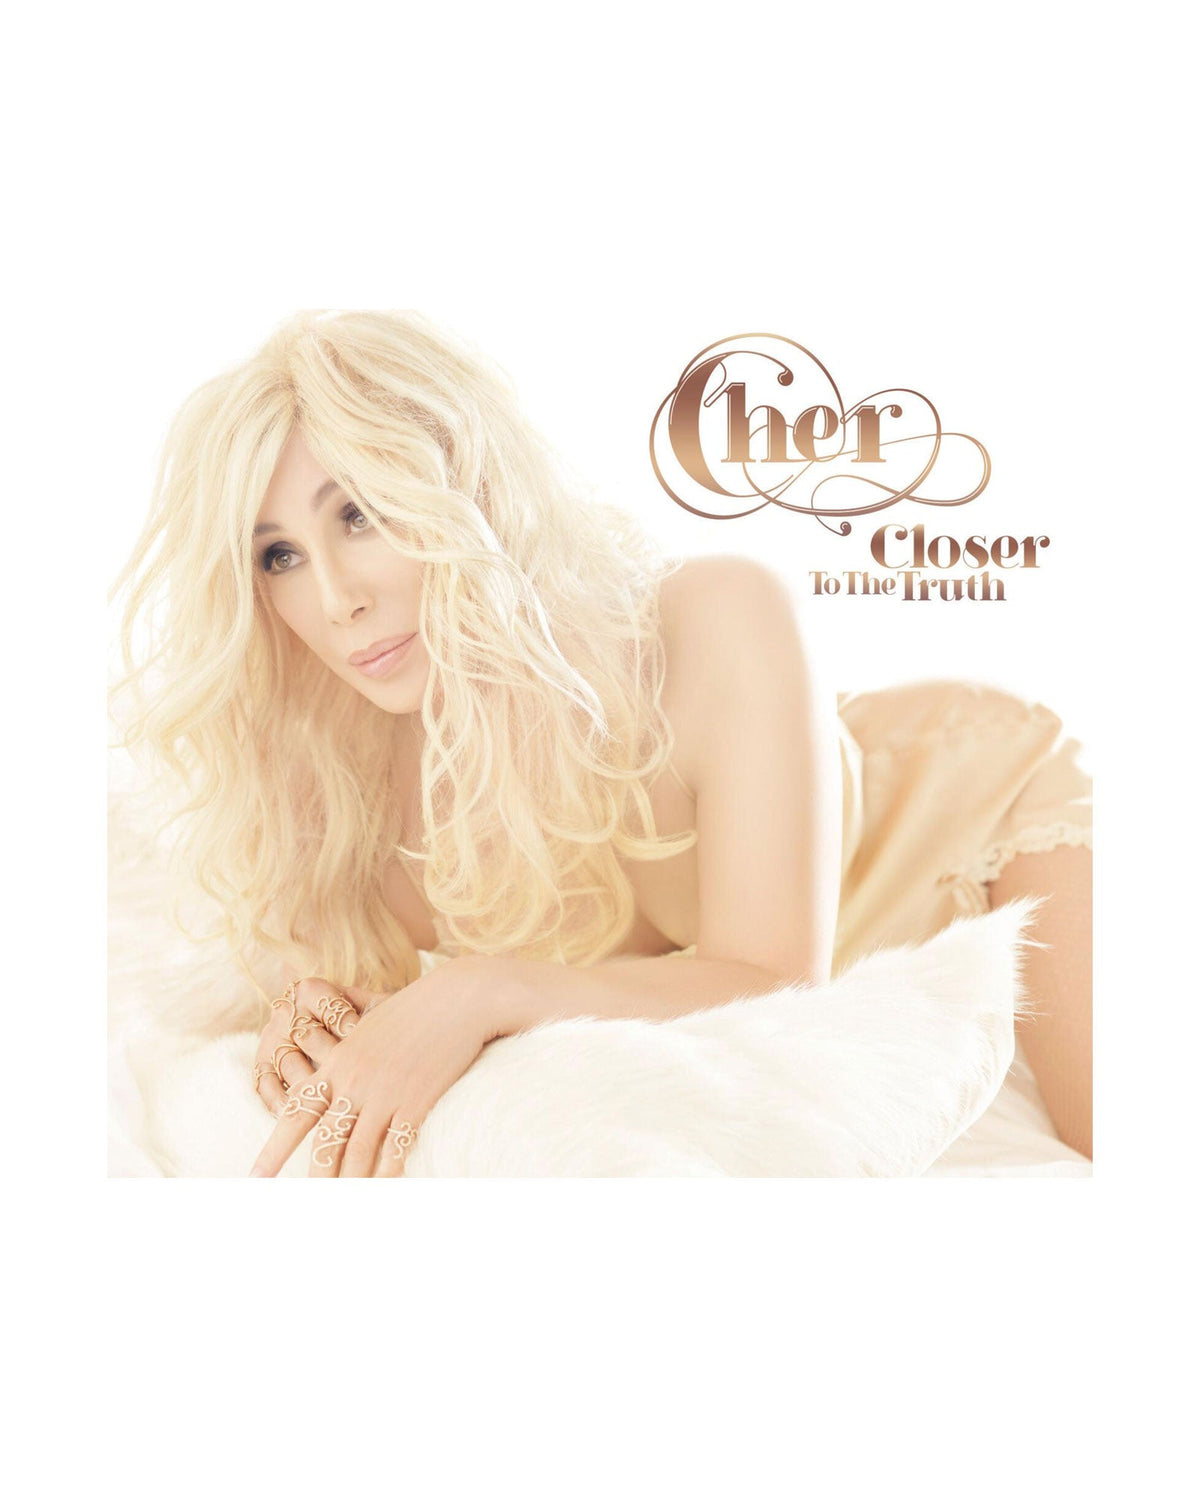 Cher - LP Vinilo Color Hueso "Closer to the truth" - D2fy · Rocktud - D2fy